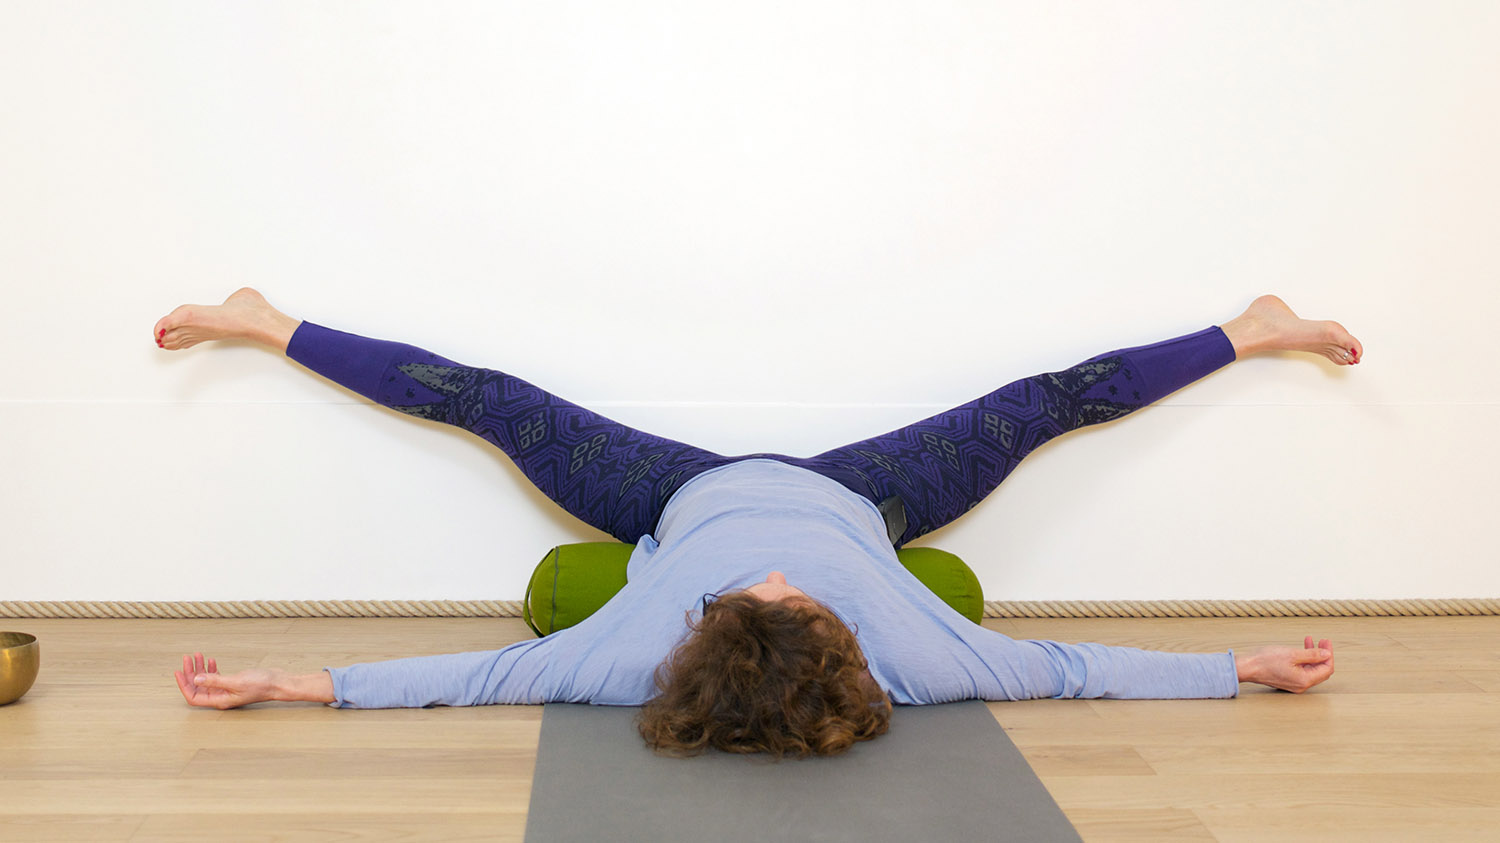 Se régénérer les pieds au mur | Cours de yoga en ligne avec Delphine Denis | Restorative Yoga, Yin Yoga